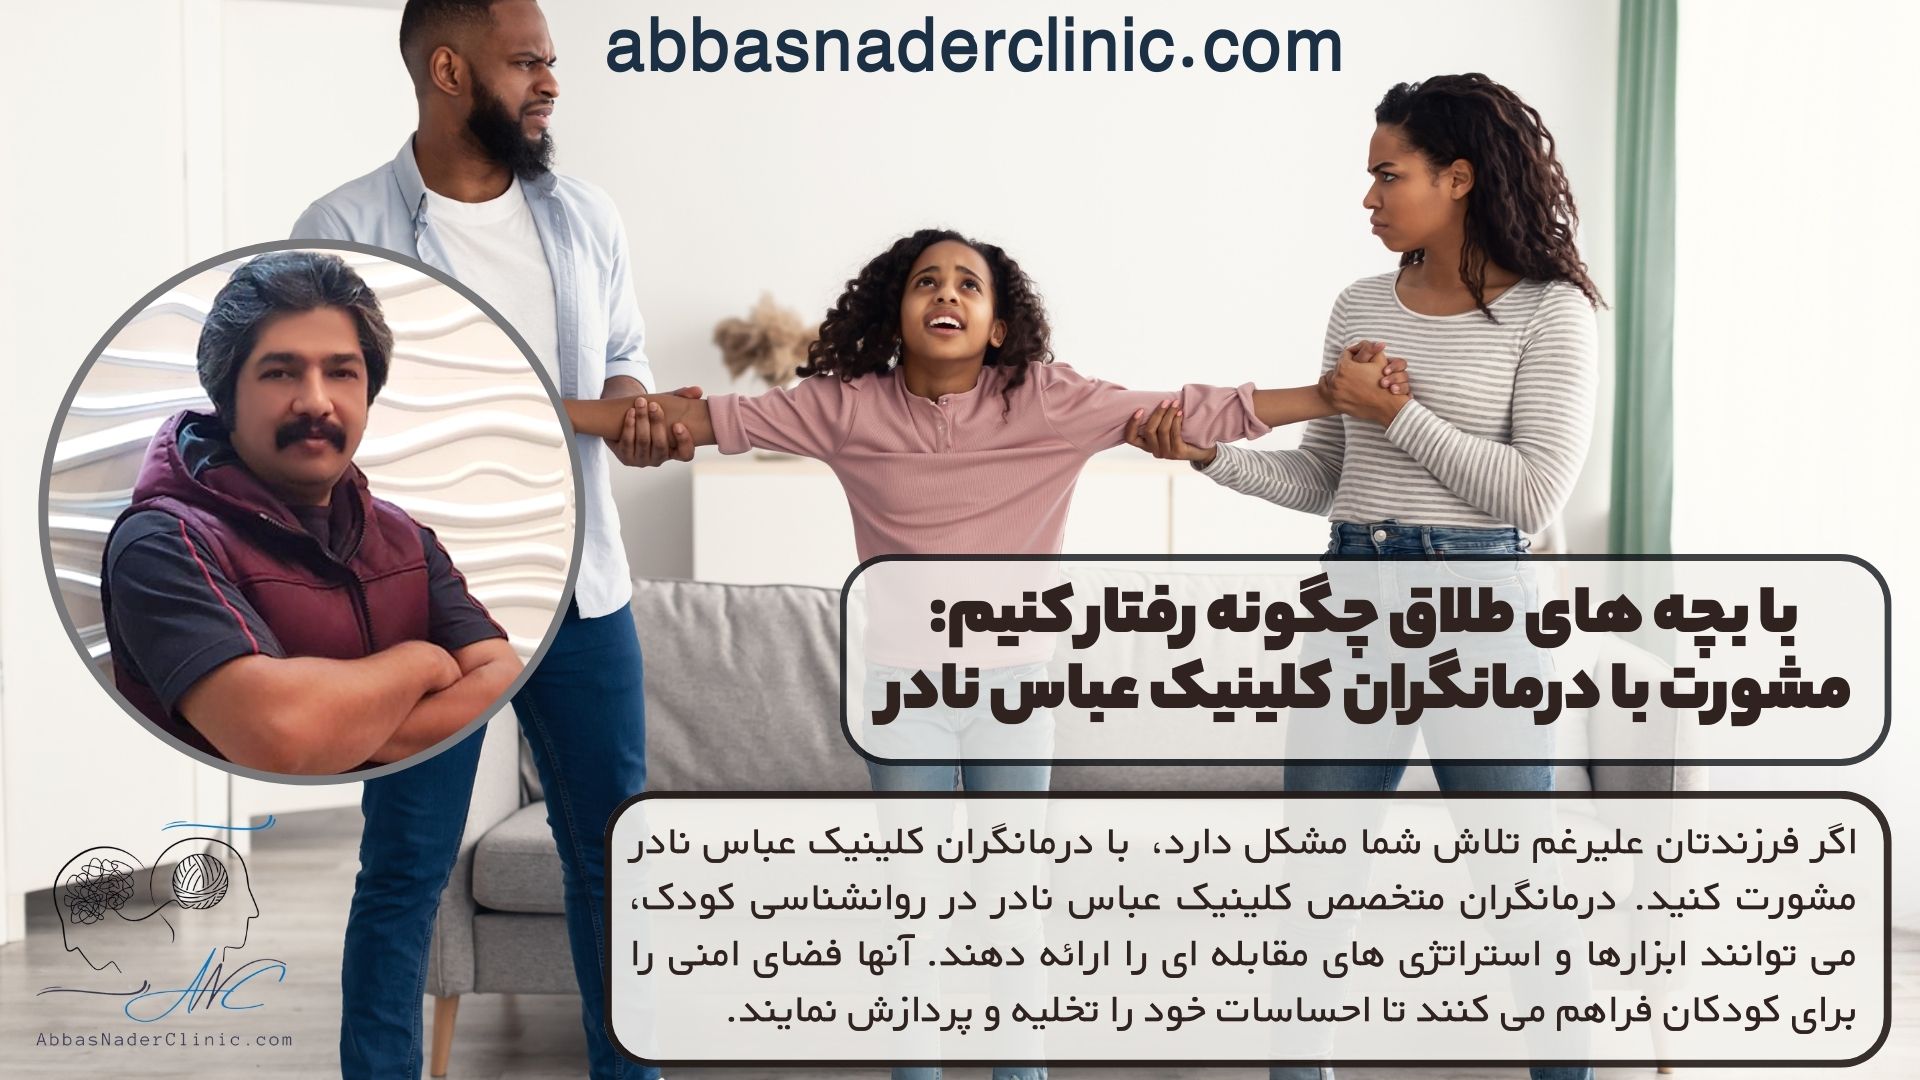 با بچه های طلاق چگونه رفتار کنیم: مشورت با درمانگران کلینیک عباس نادر